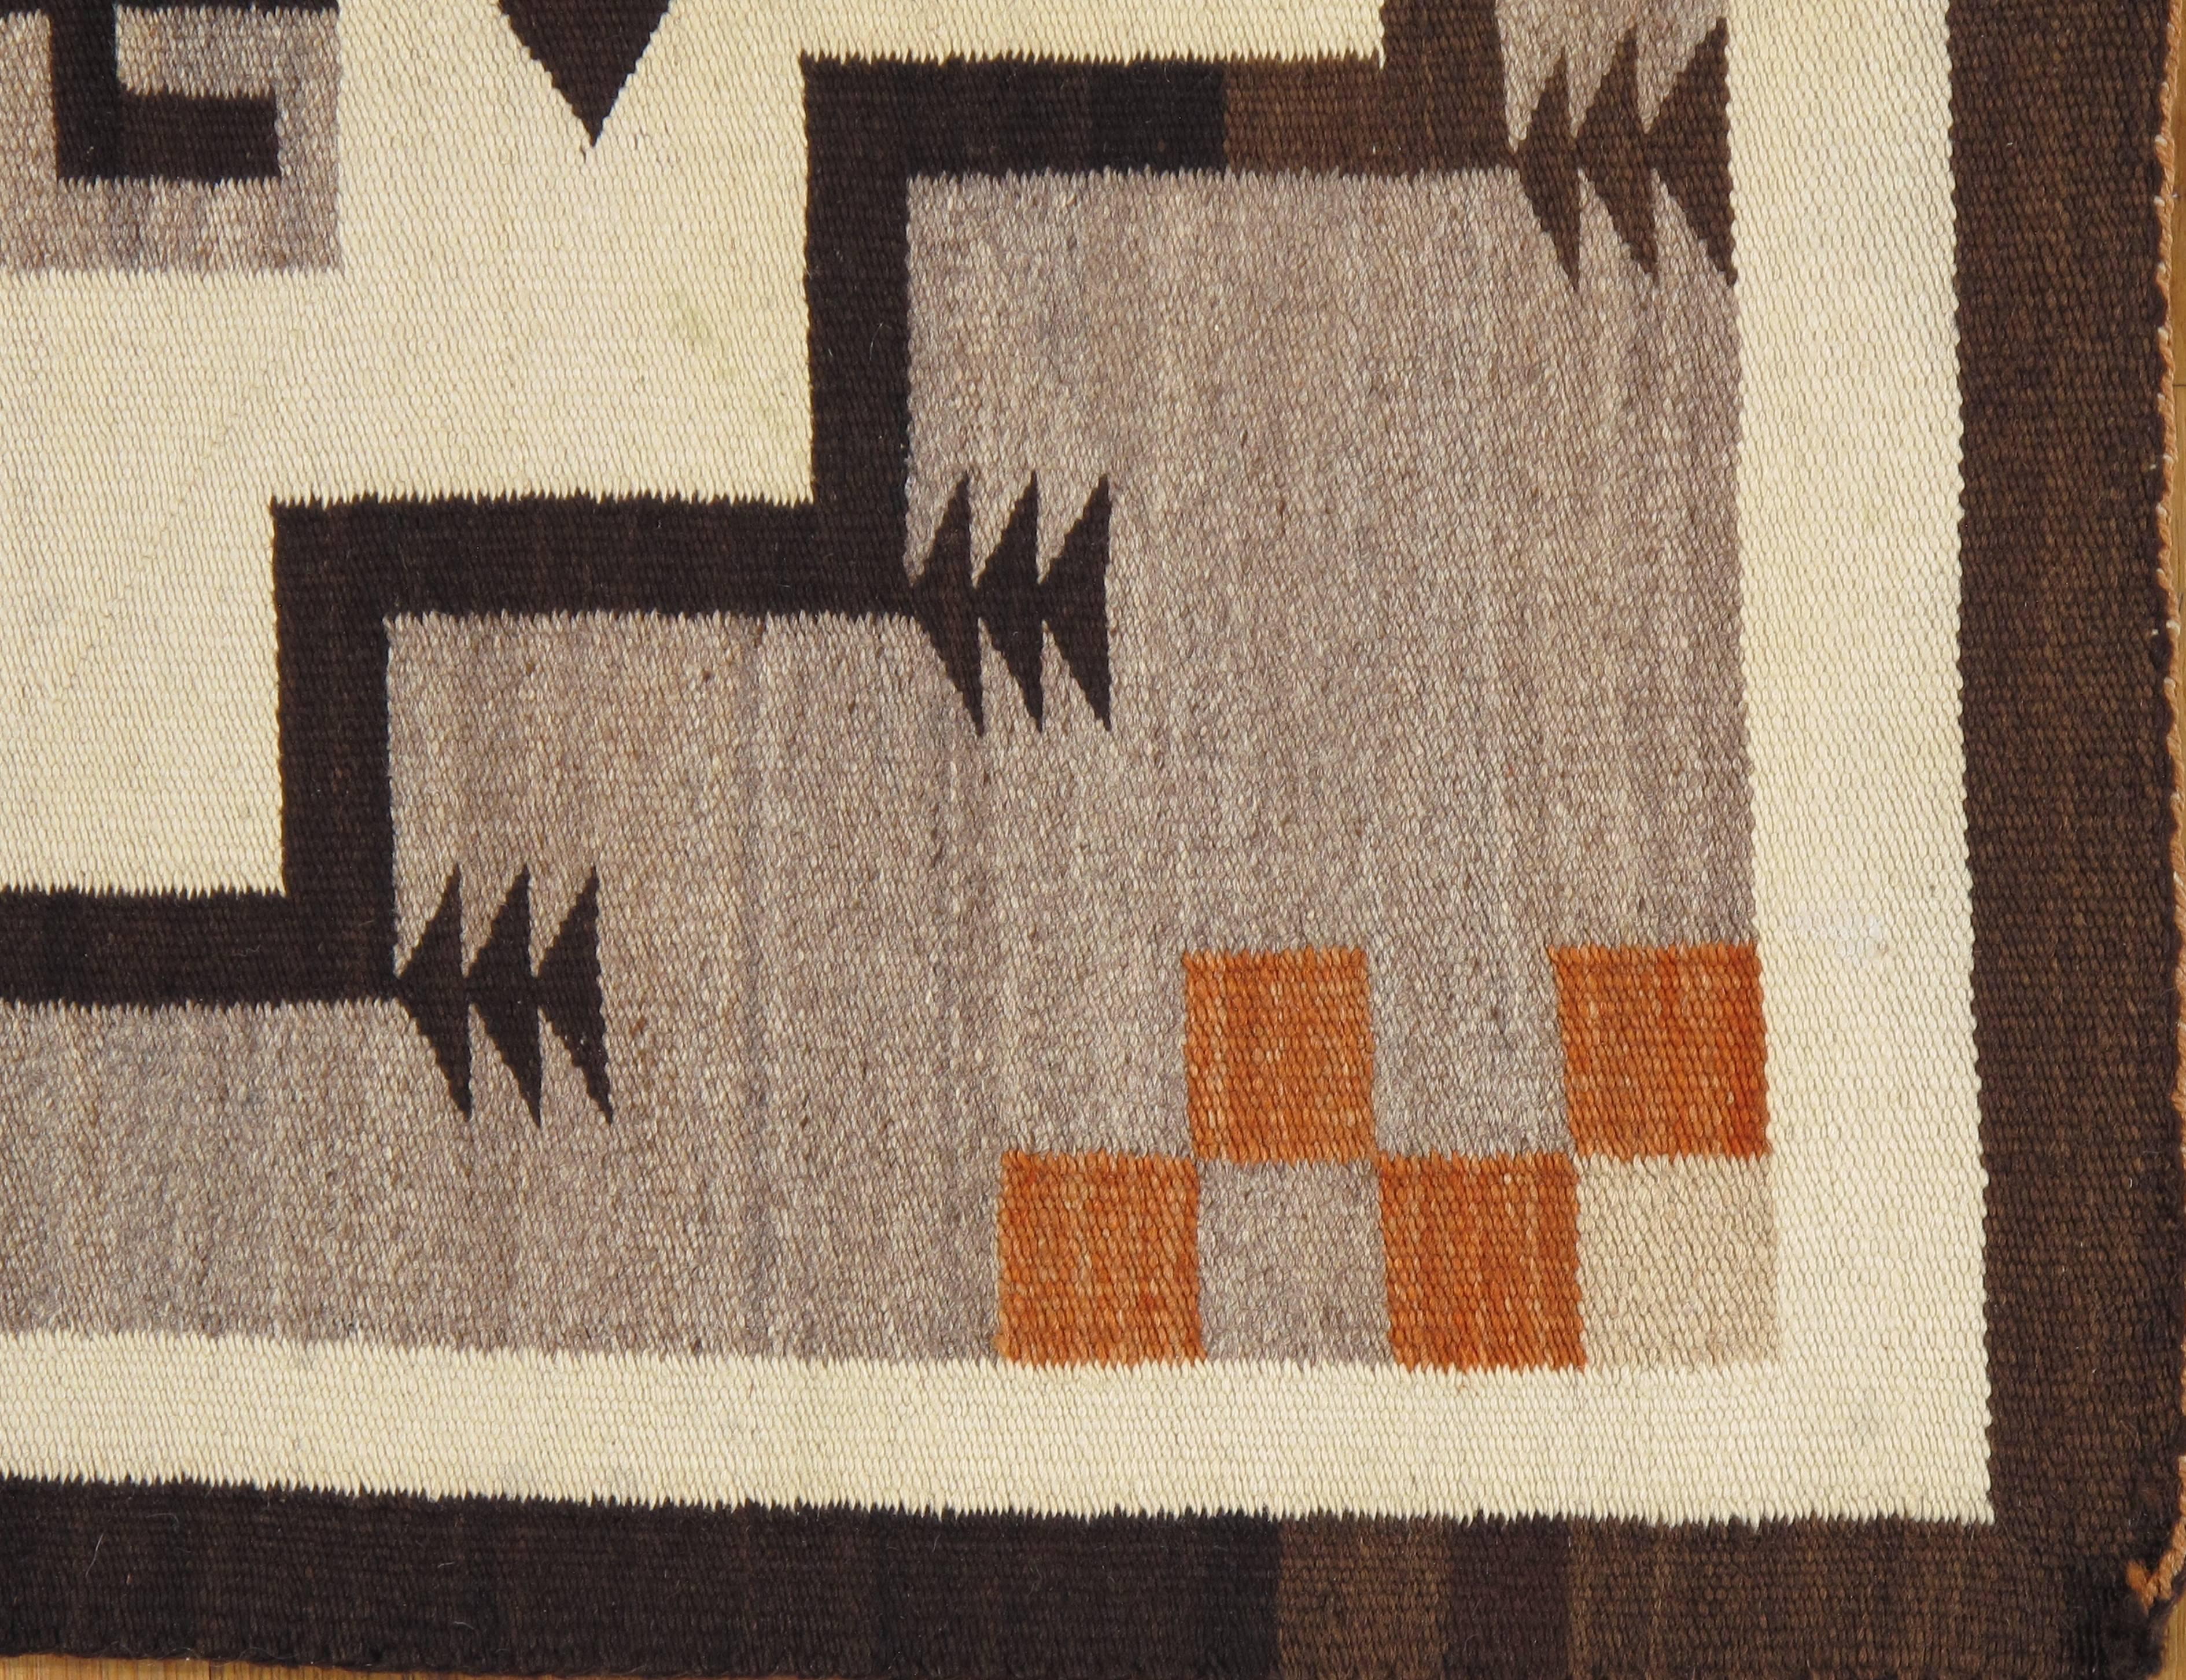 American Antique Navajo Rug, Handmade Wool Oriental Rug, Beige and Brown